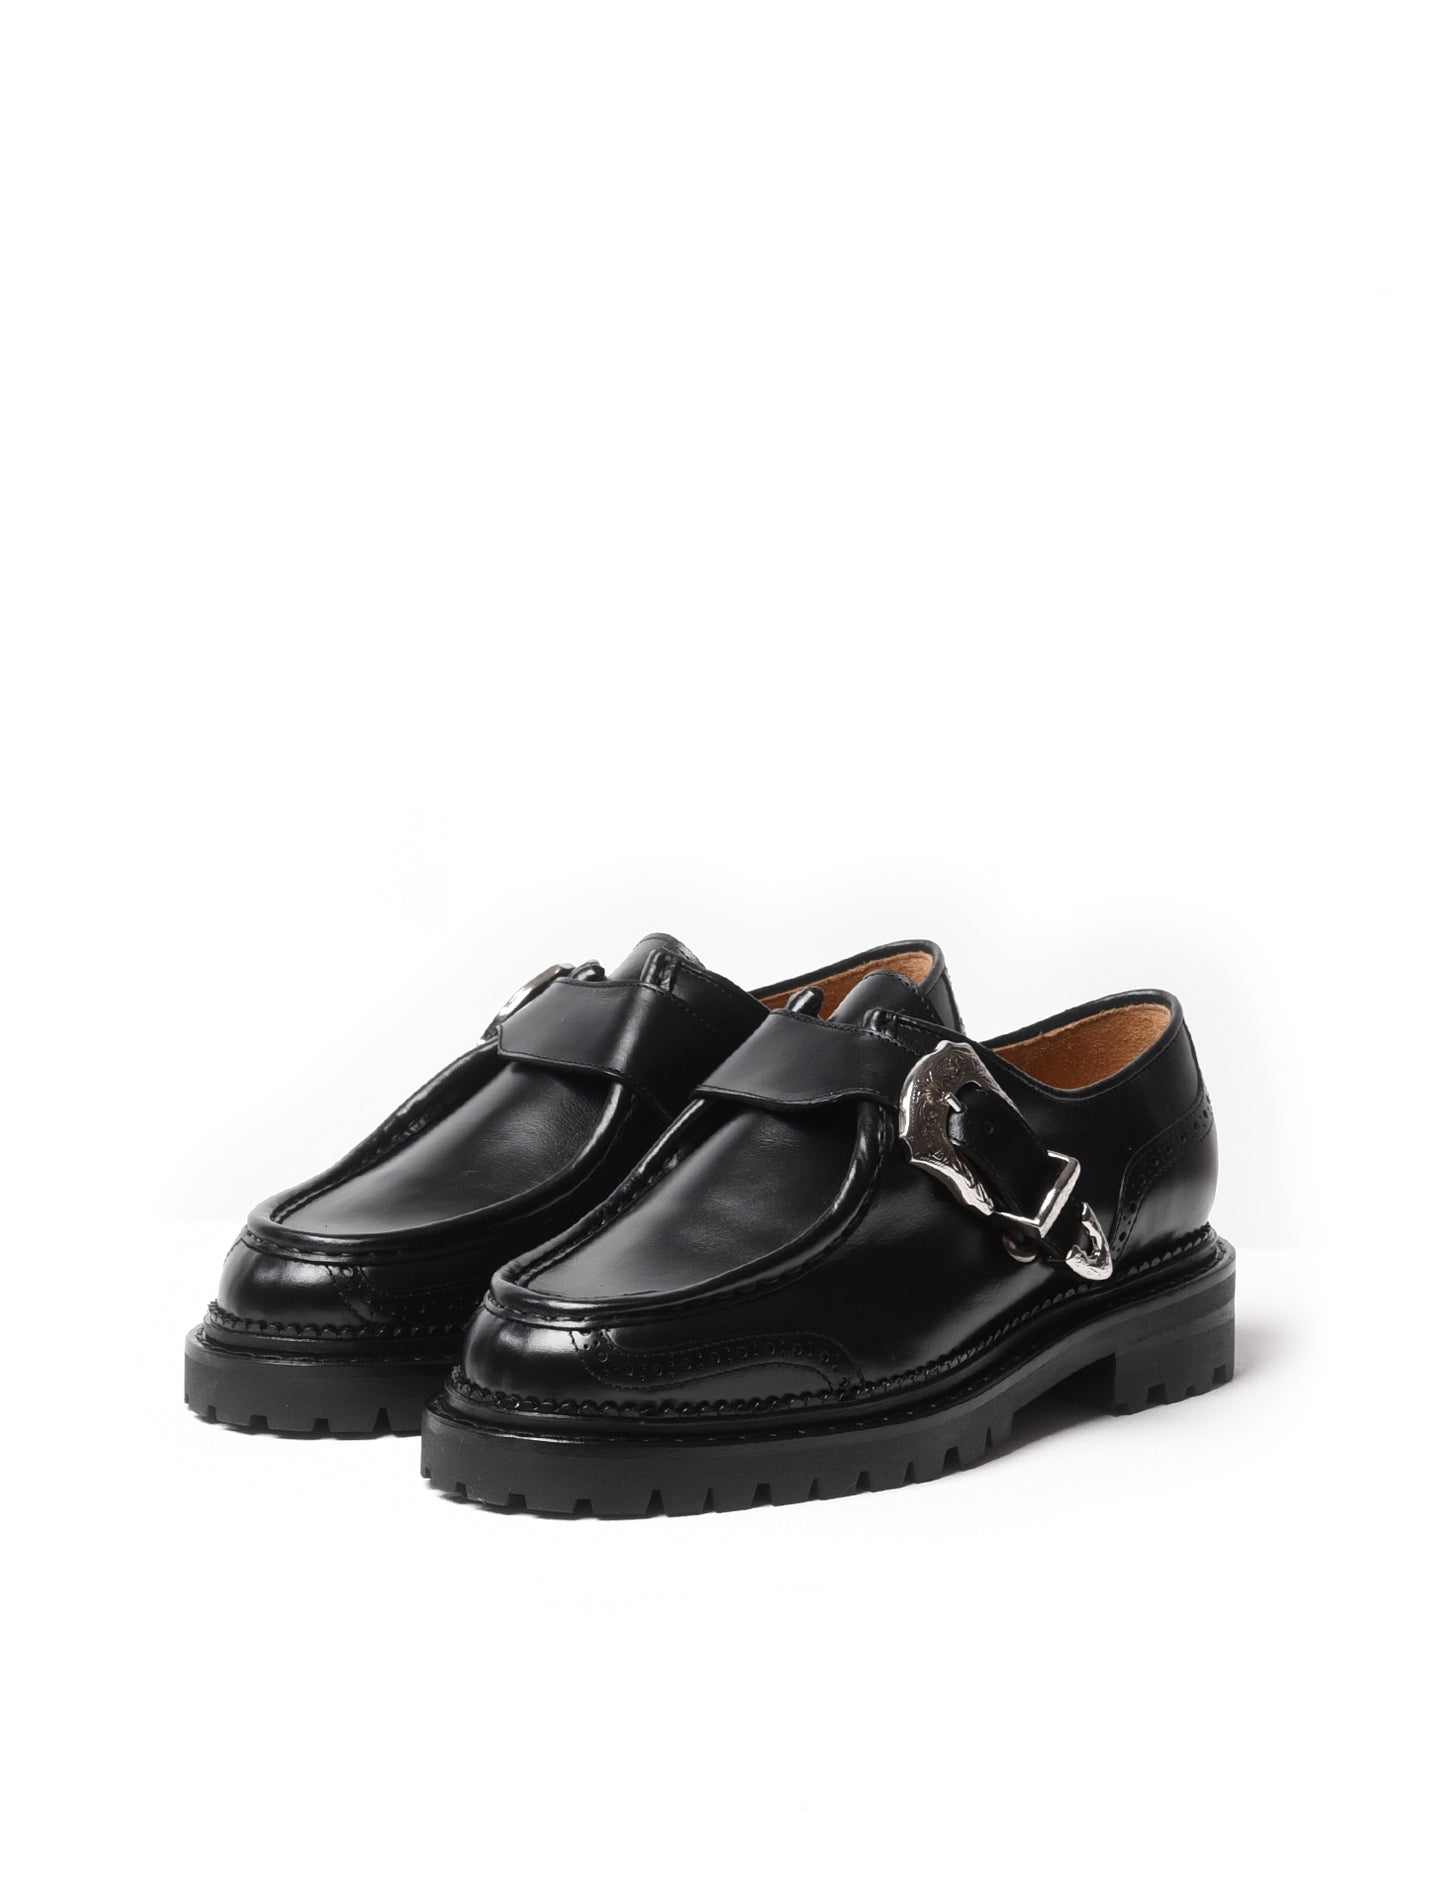 Toga Virilis Buckled Monstrap Leather Shoes